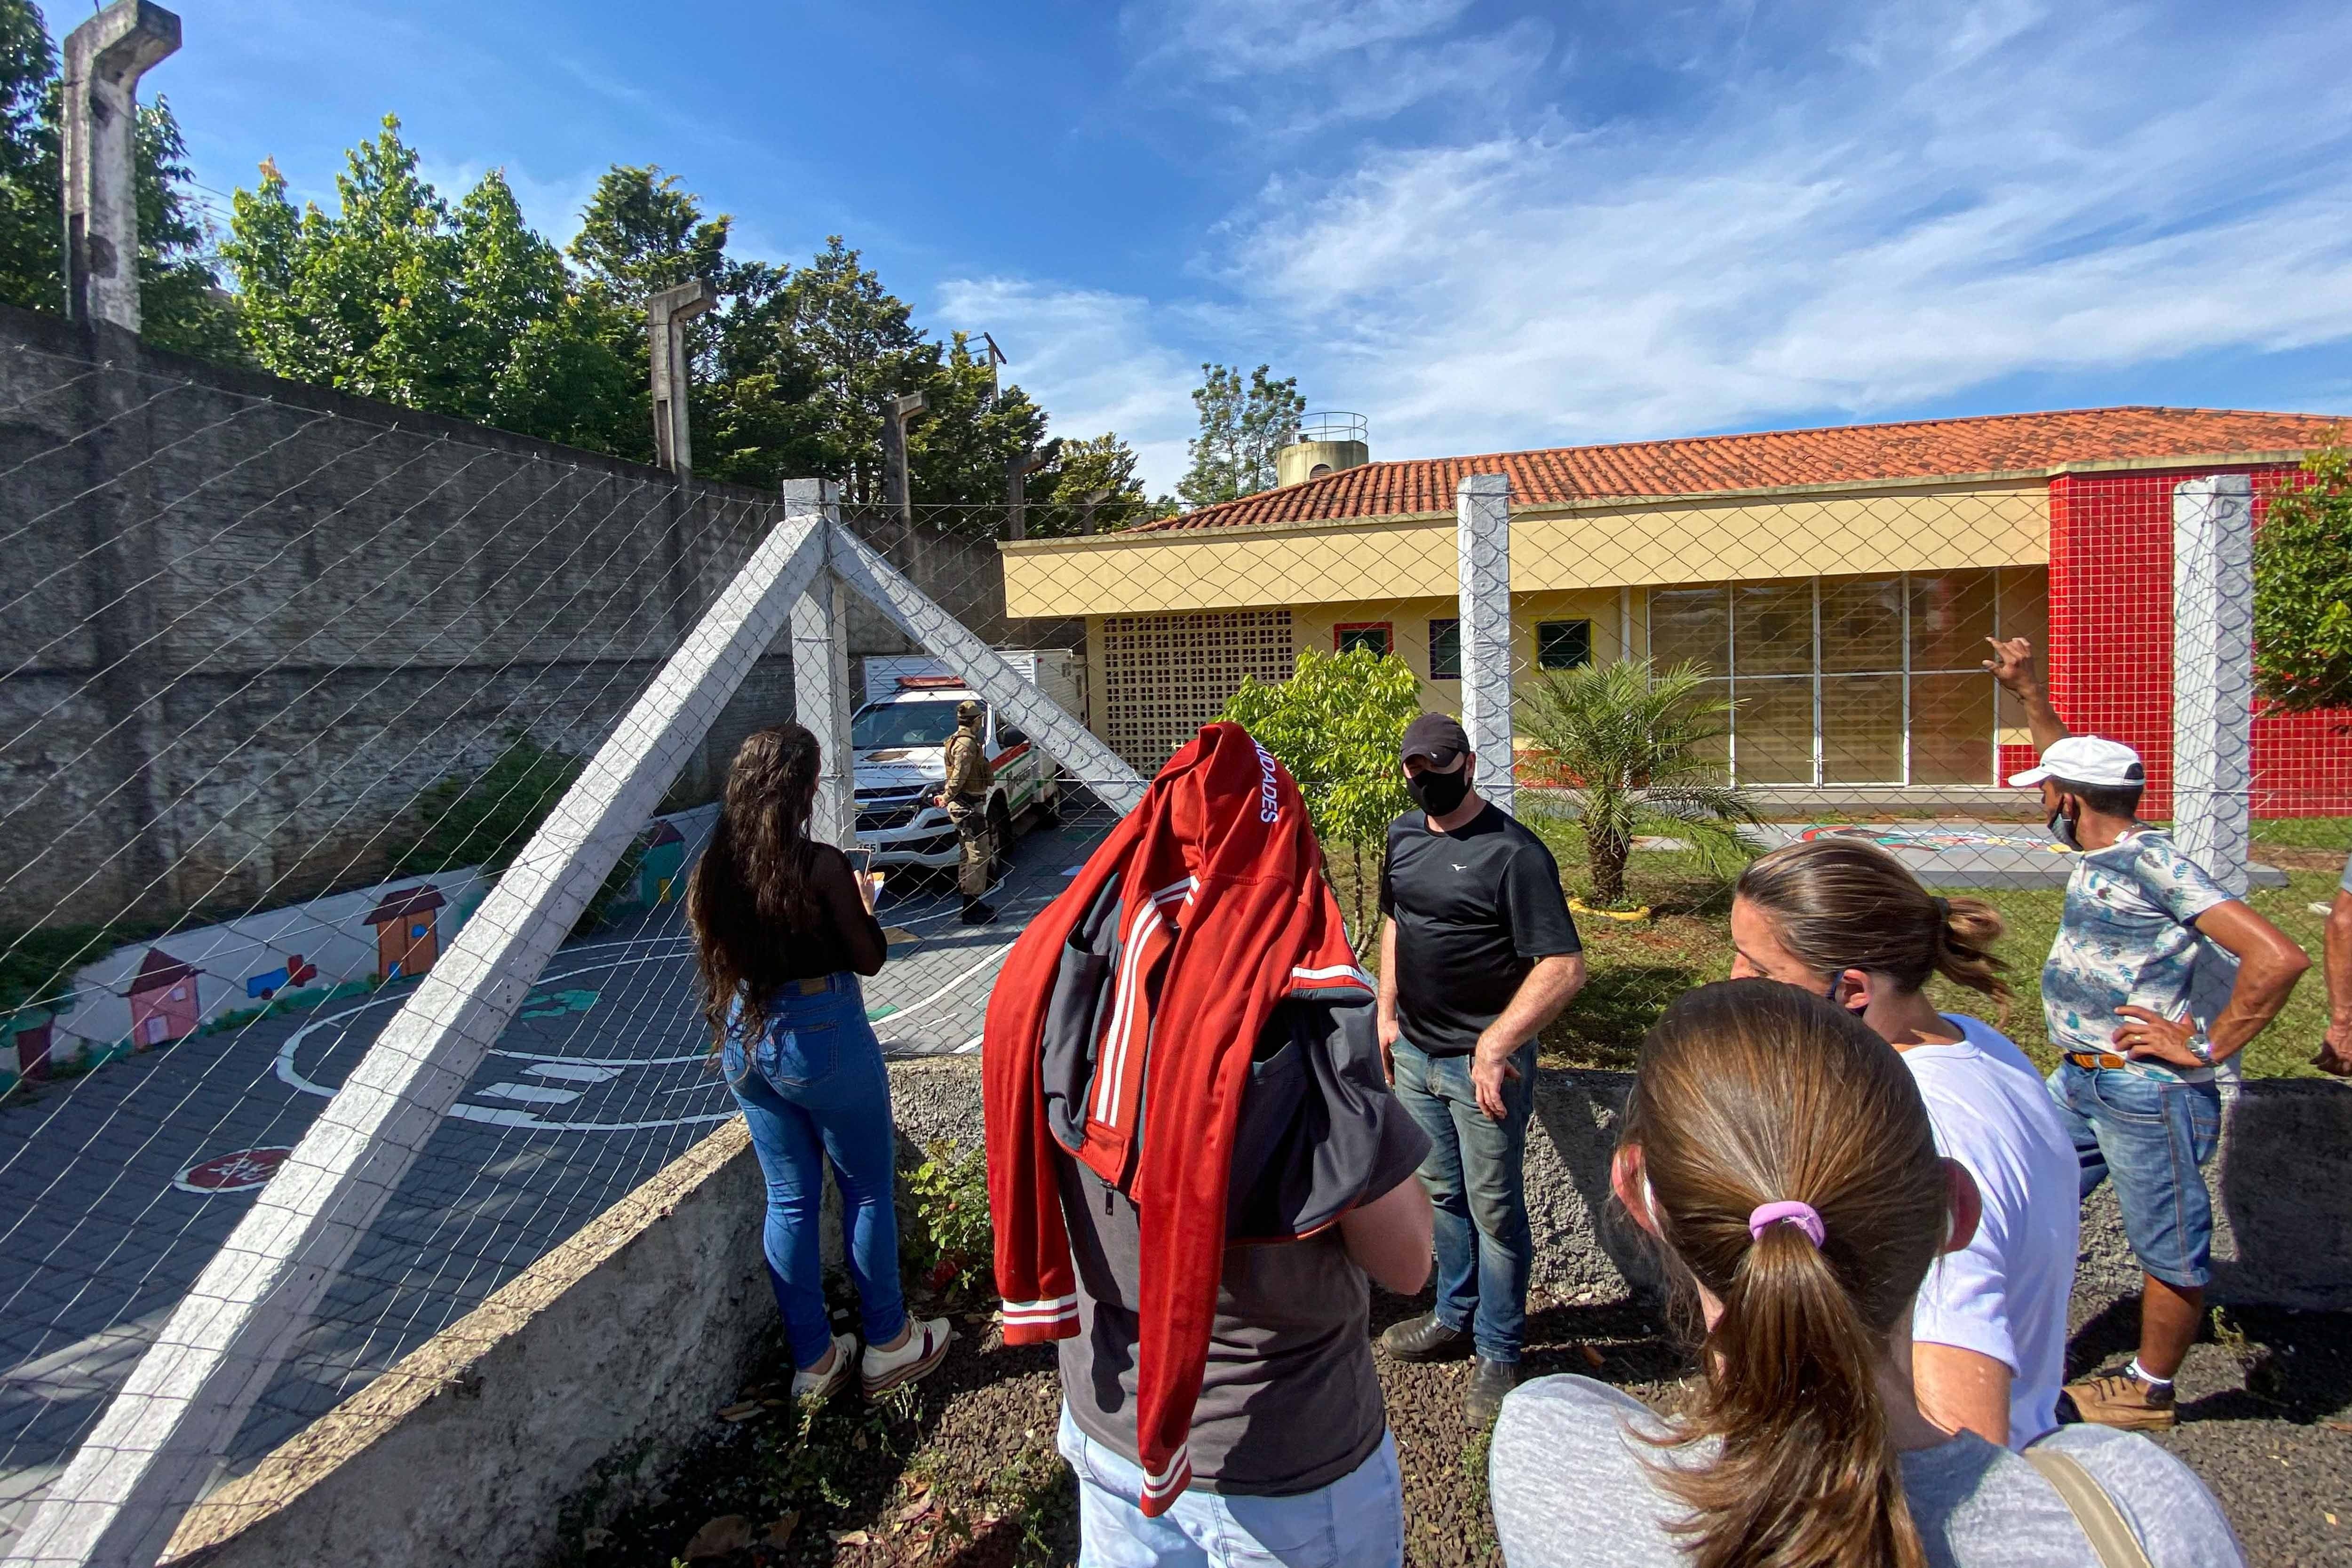 Foto de archivo: Un grupo de personas espera afuera de una guardería donde tres niños y dos docentes fueron asesinados por un adolescente en Saudade, Brasil, el 4 de mayo de 2021 (EFE/iShoot/William Ricardo)
